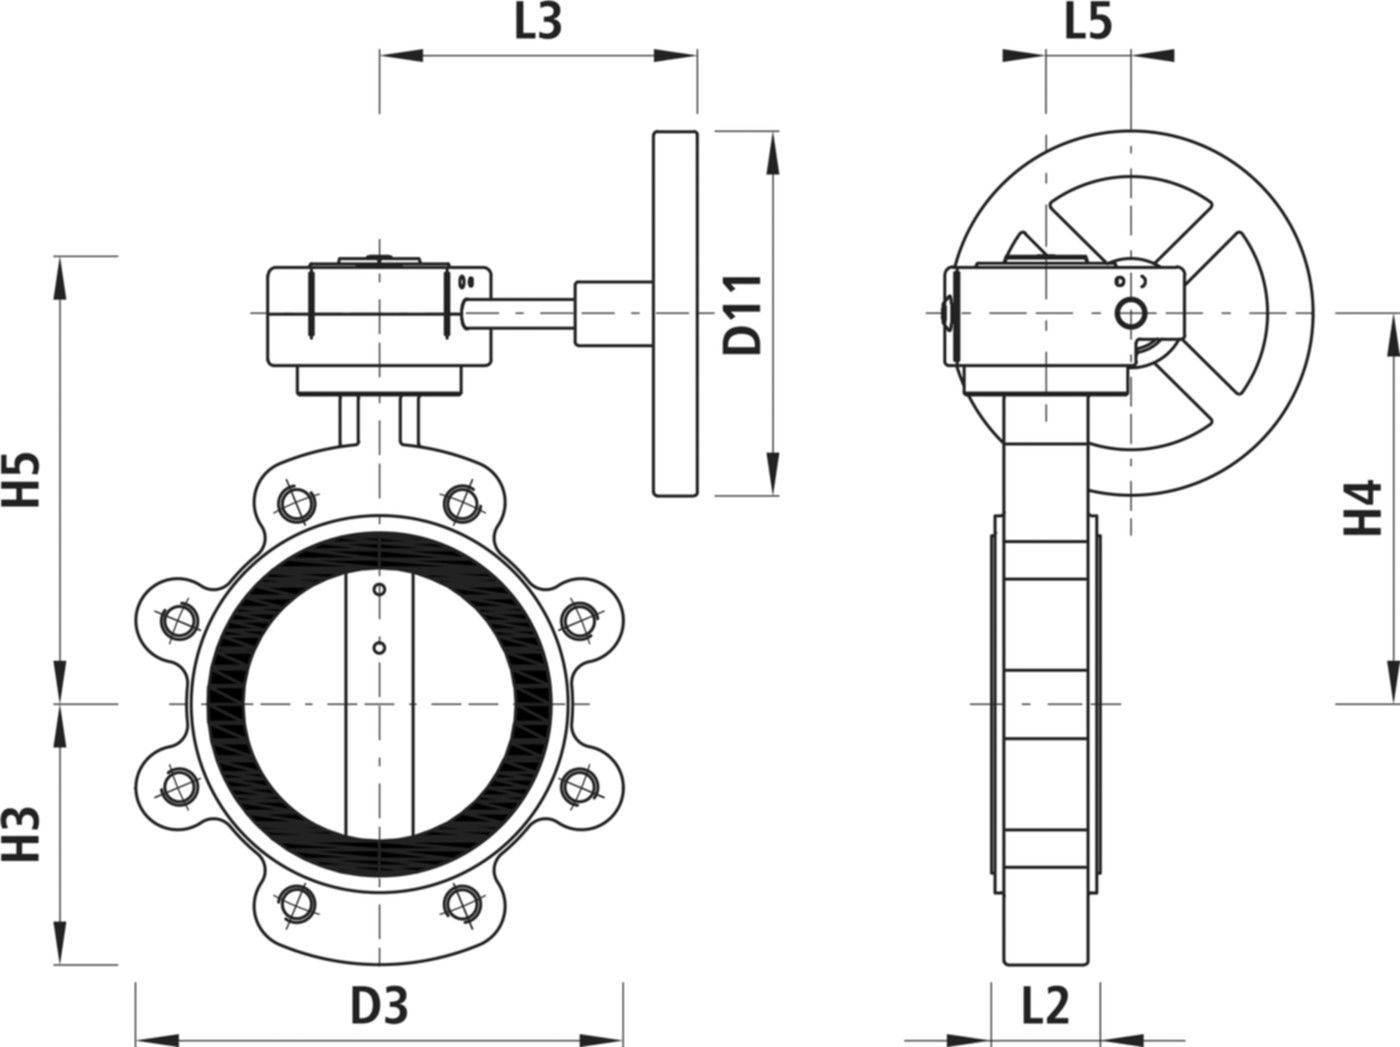 Absperrklappe mit Getriebe Typ LI 9943 DN 300 PN 10 - Hawle Absperrklappen